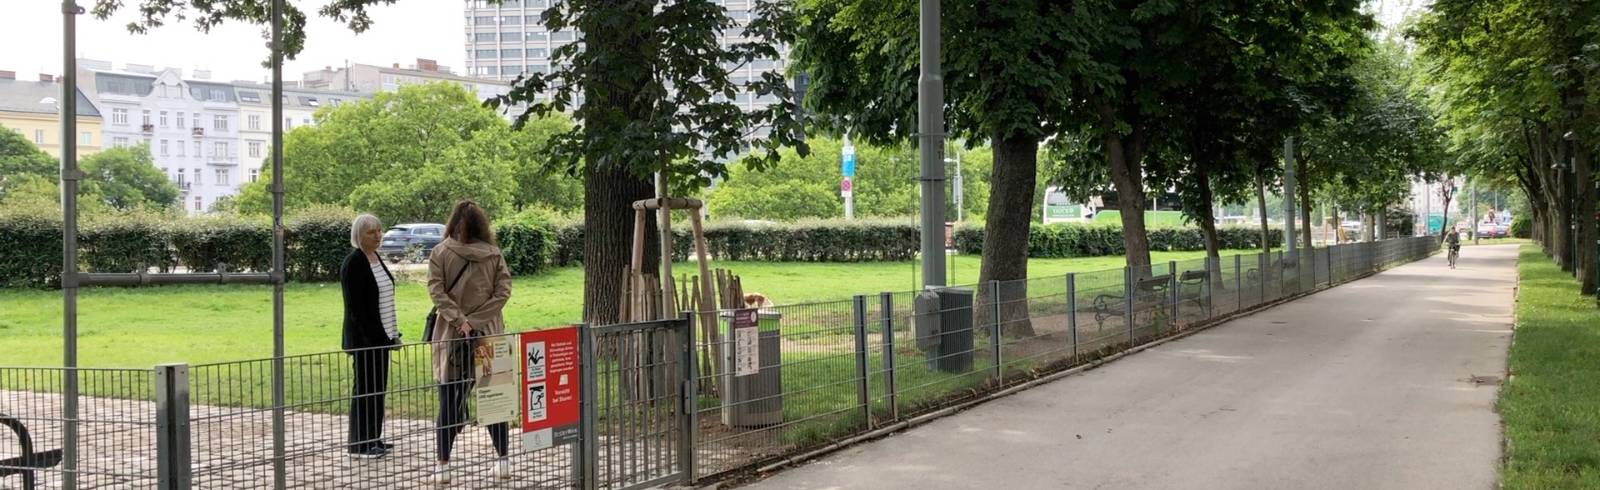 Bezirksflash: Neuer Rasen für Hundezone im 1.